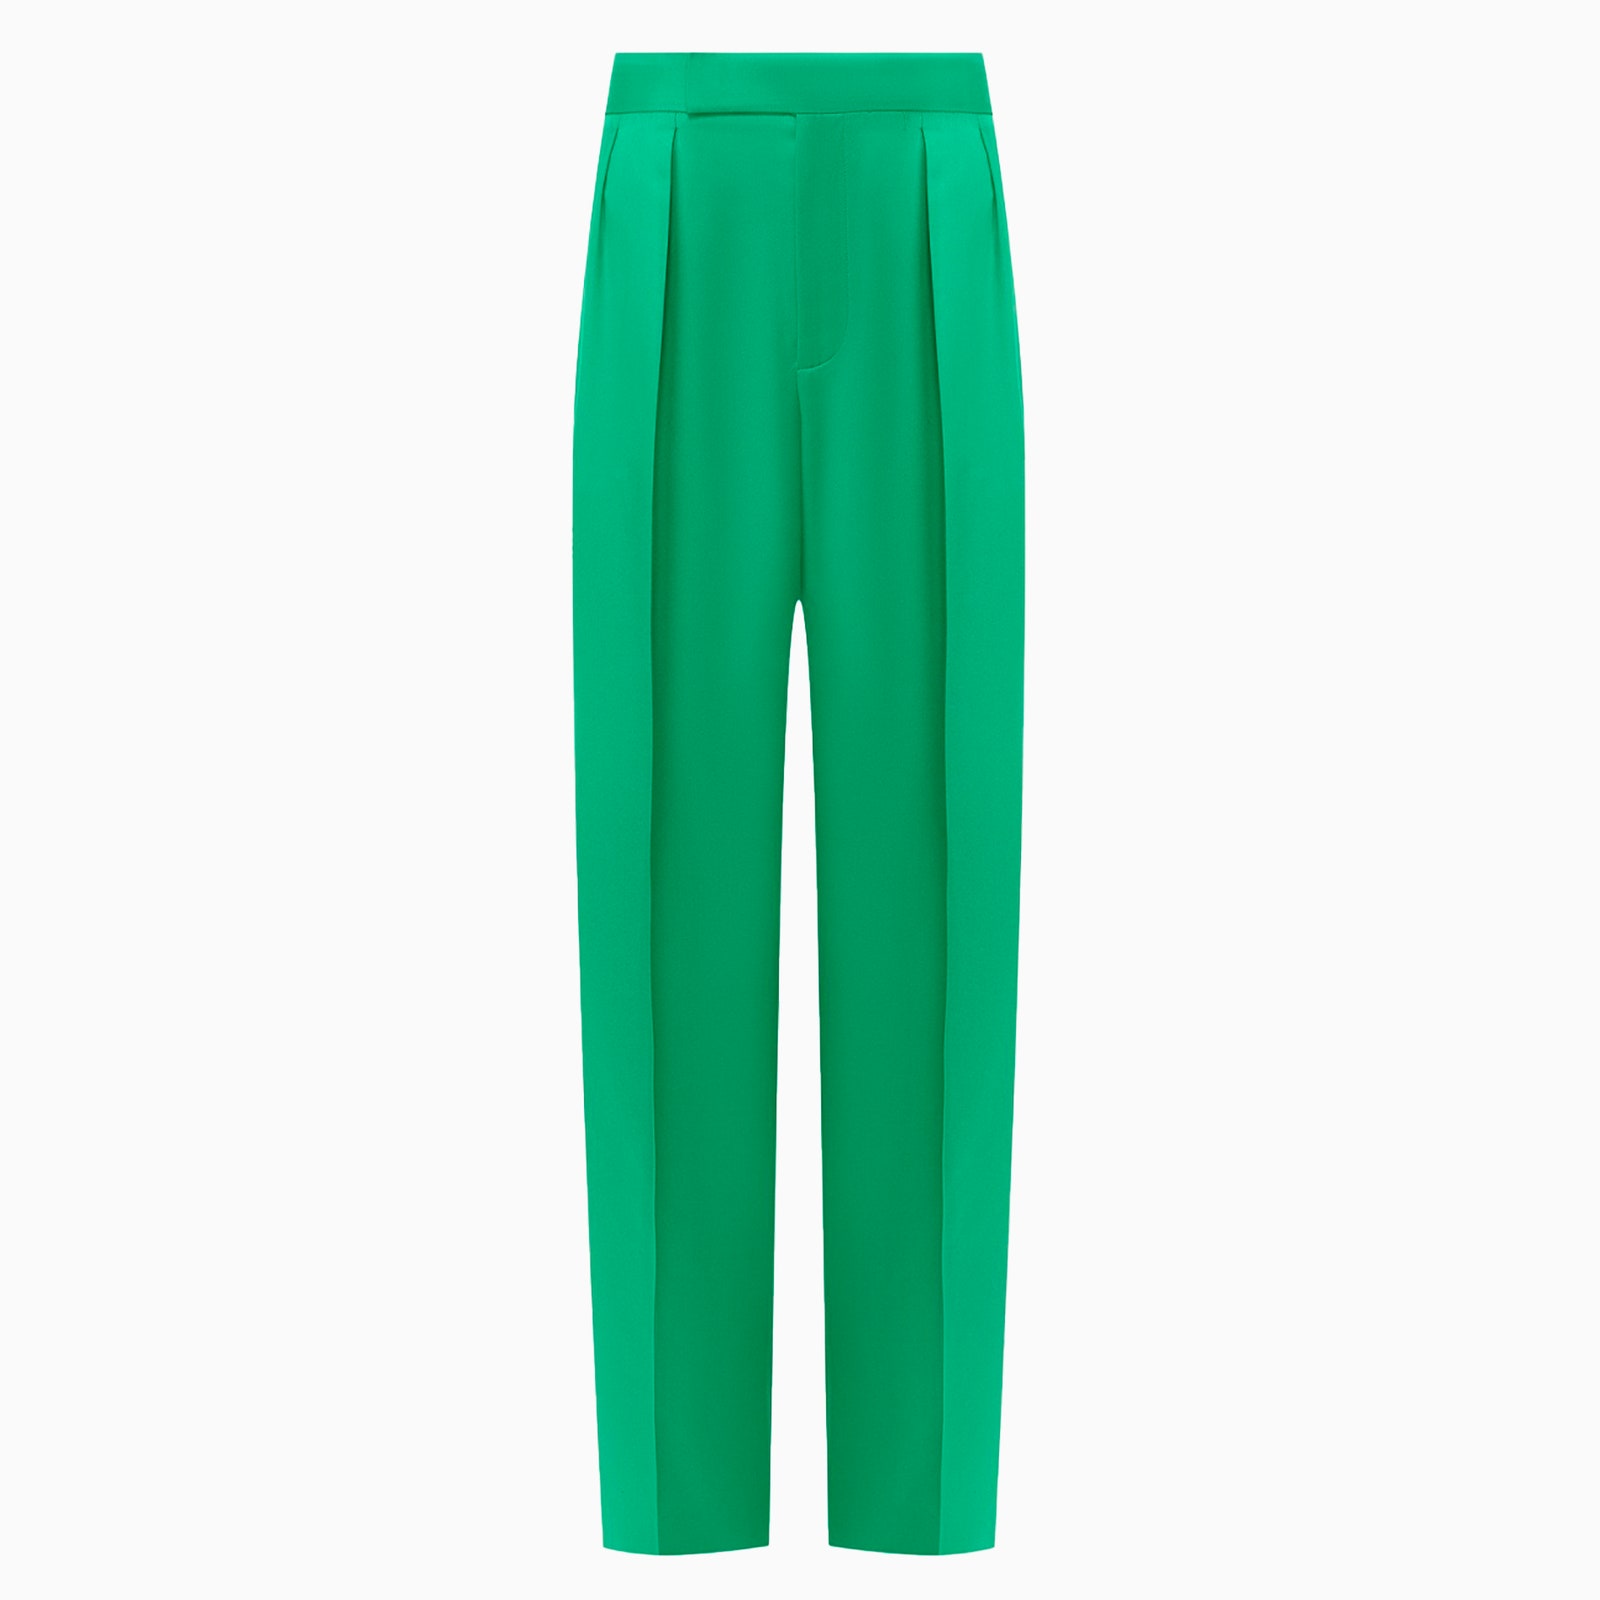 Зеленые брюки — отличная альтернатива черным и серым. Рассказываем, как носить их каждый день